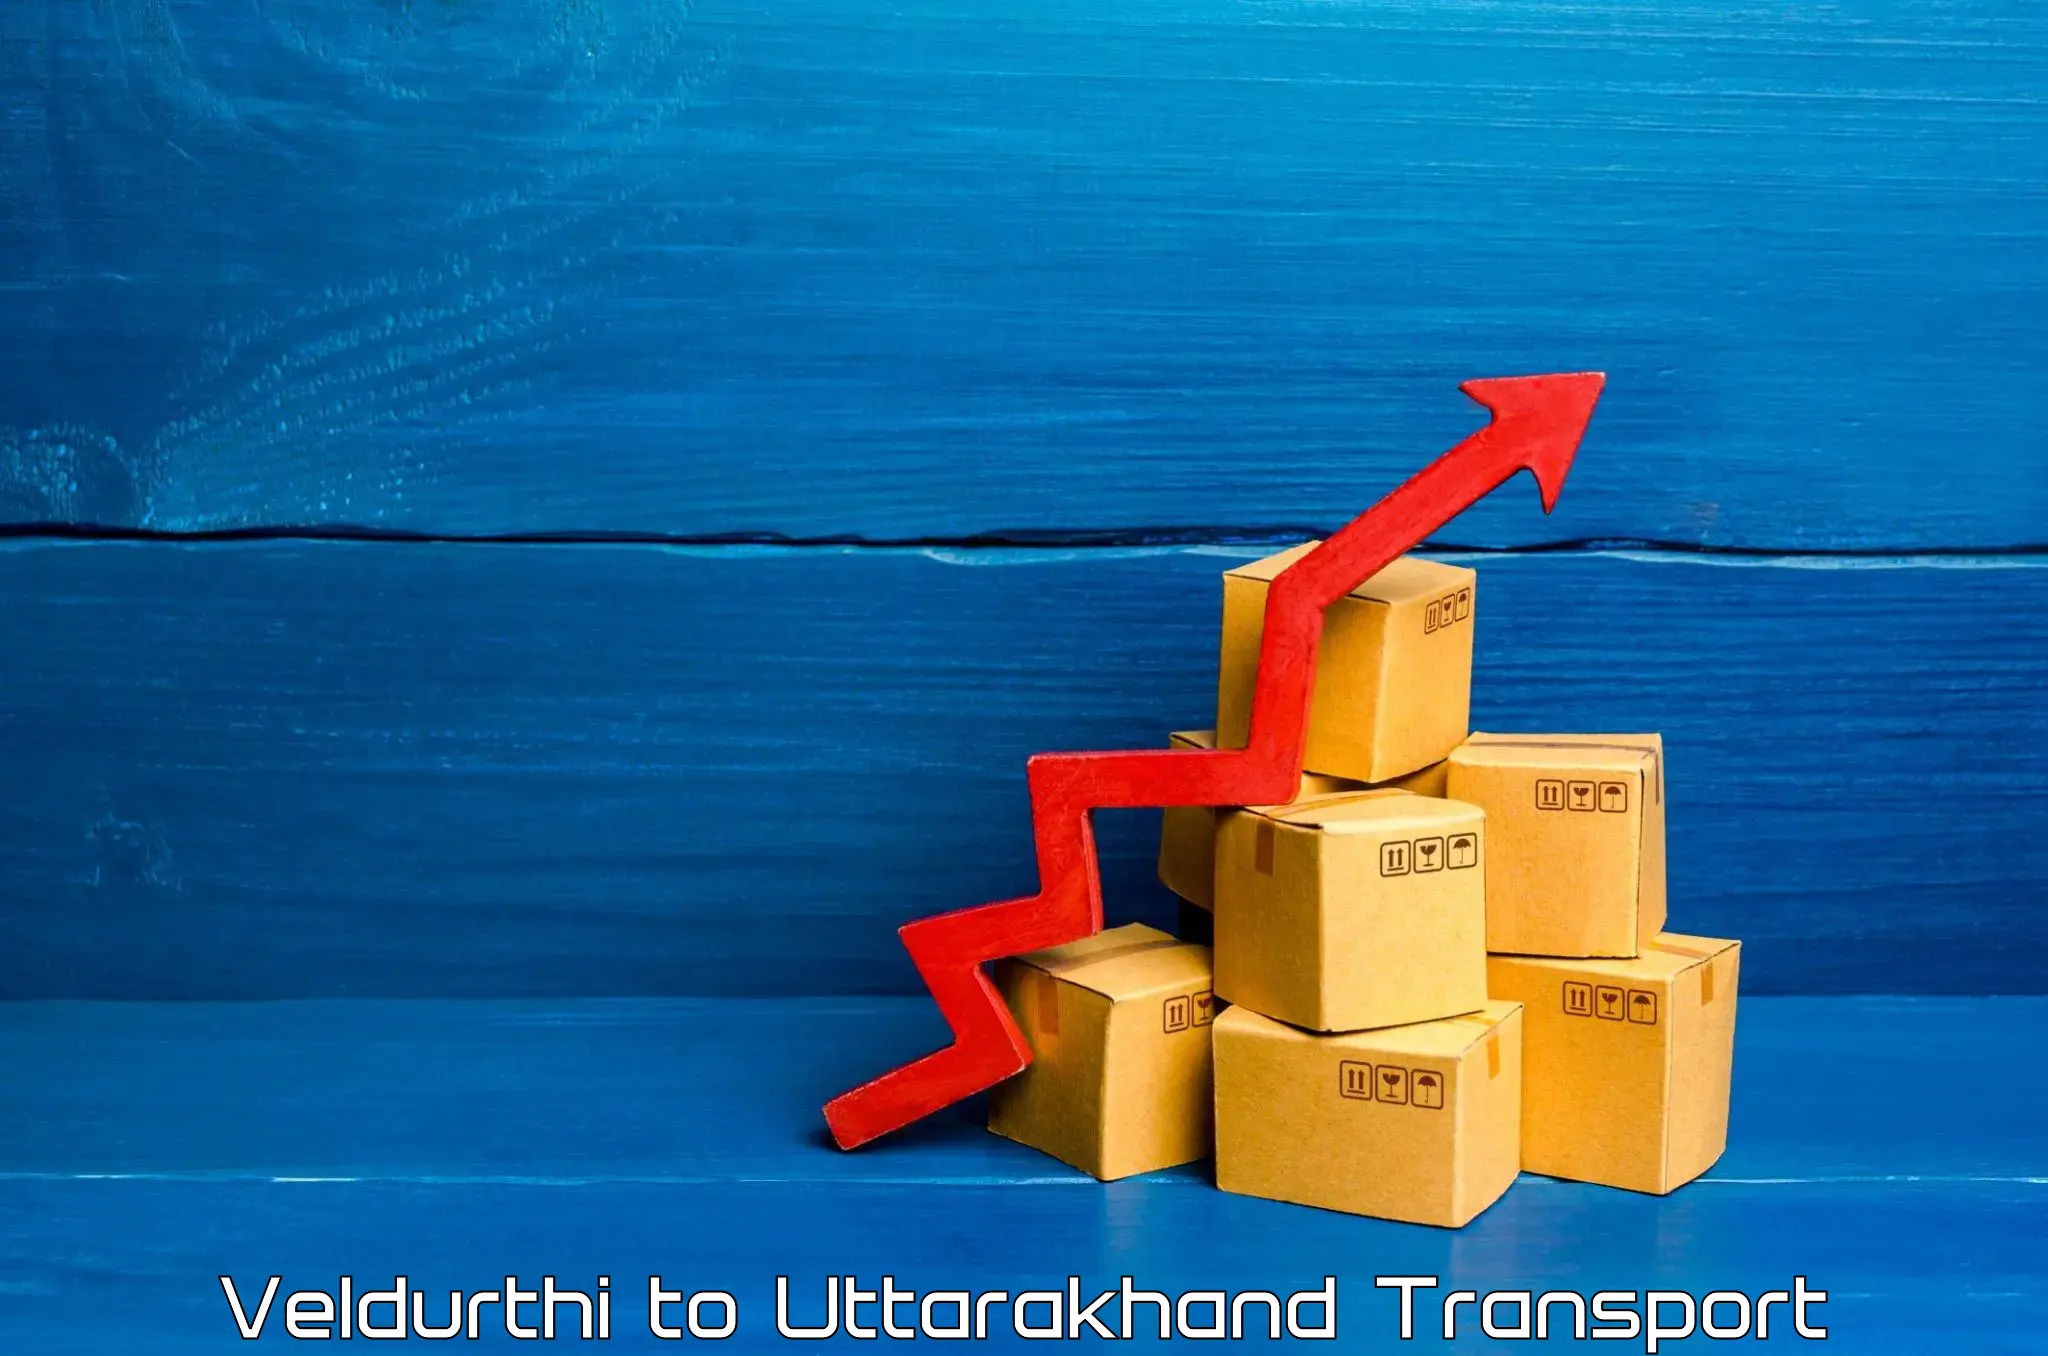 Nearby transport service Veldurthi to Uttarakhand